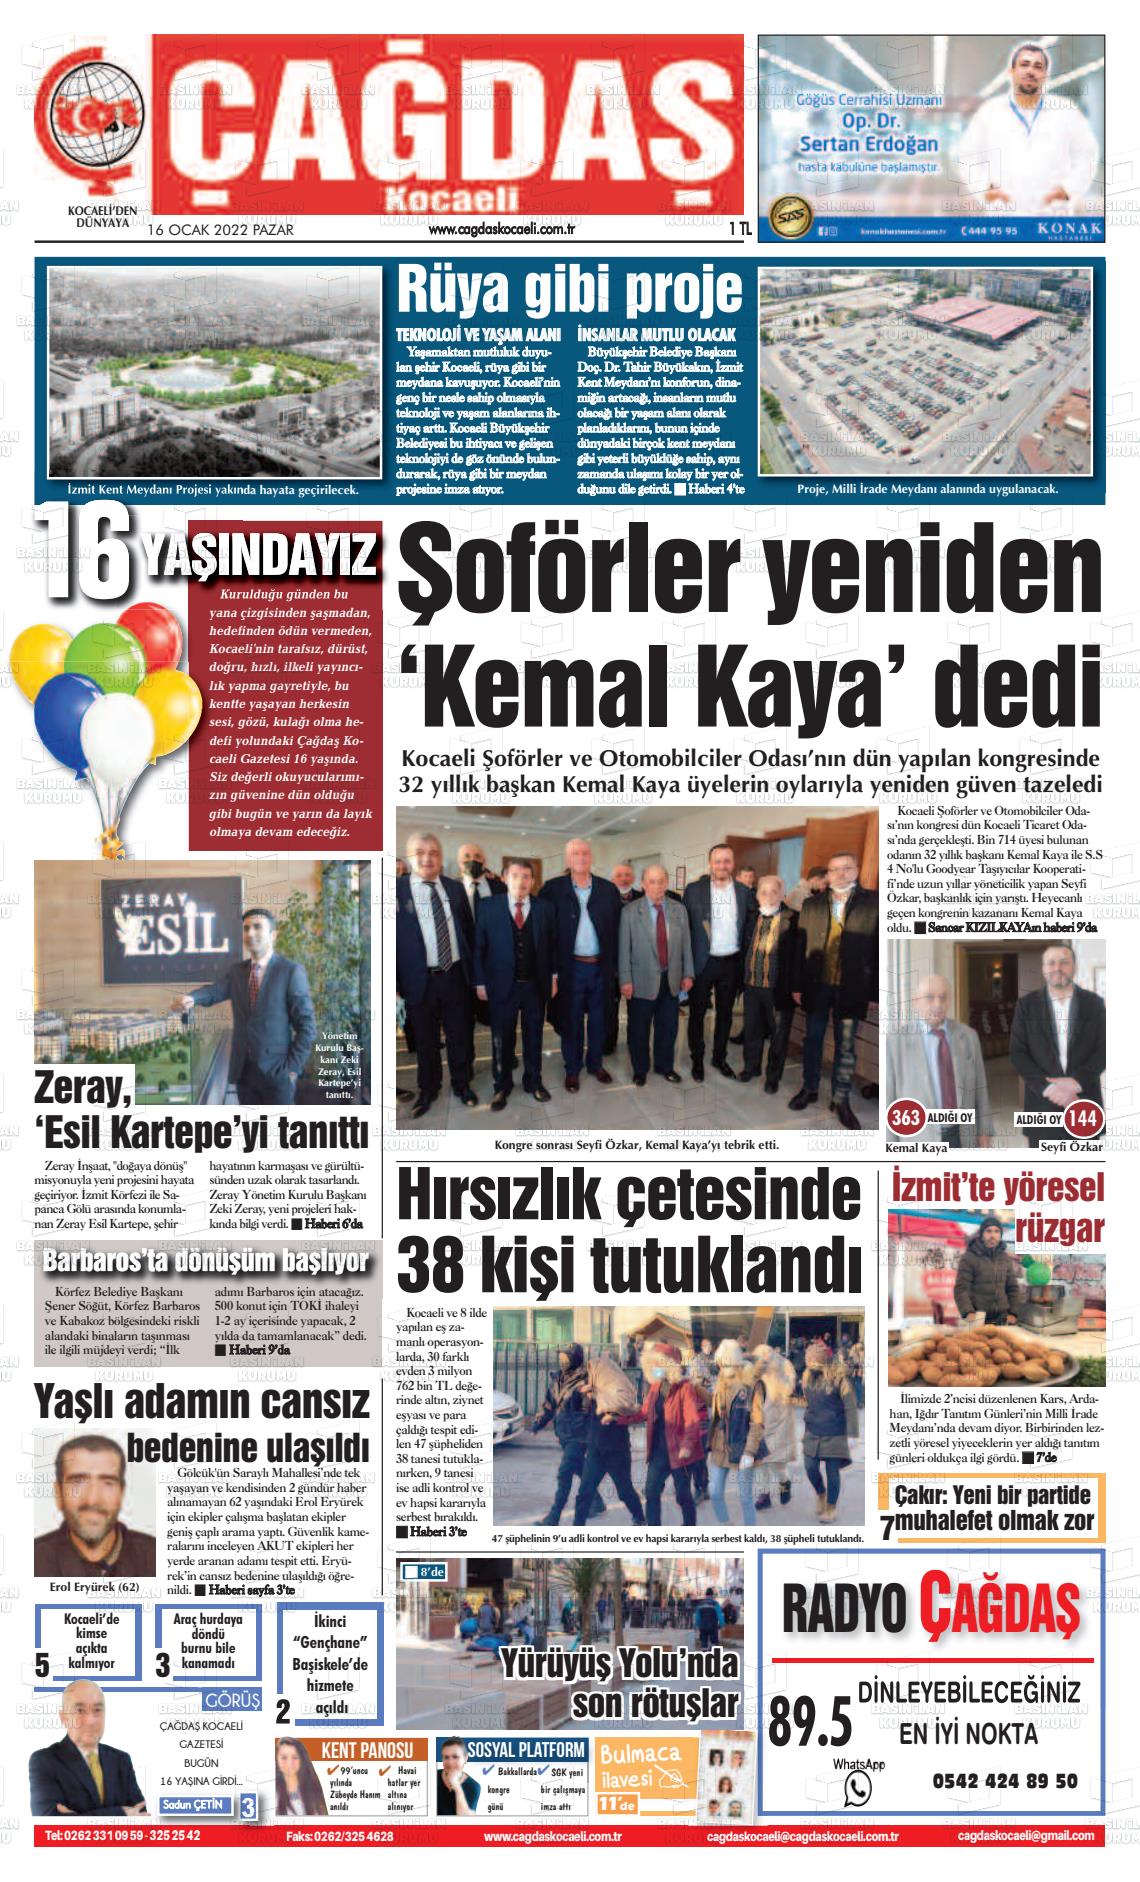 16 Ocak 2022 Çağdaş Kocaeli Gazete Manşeti